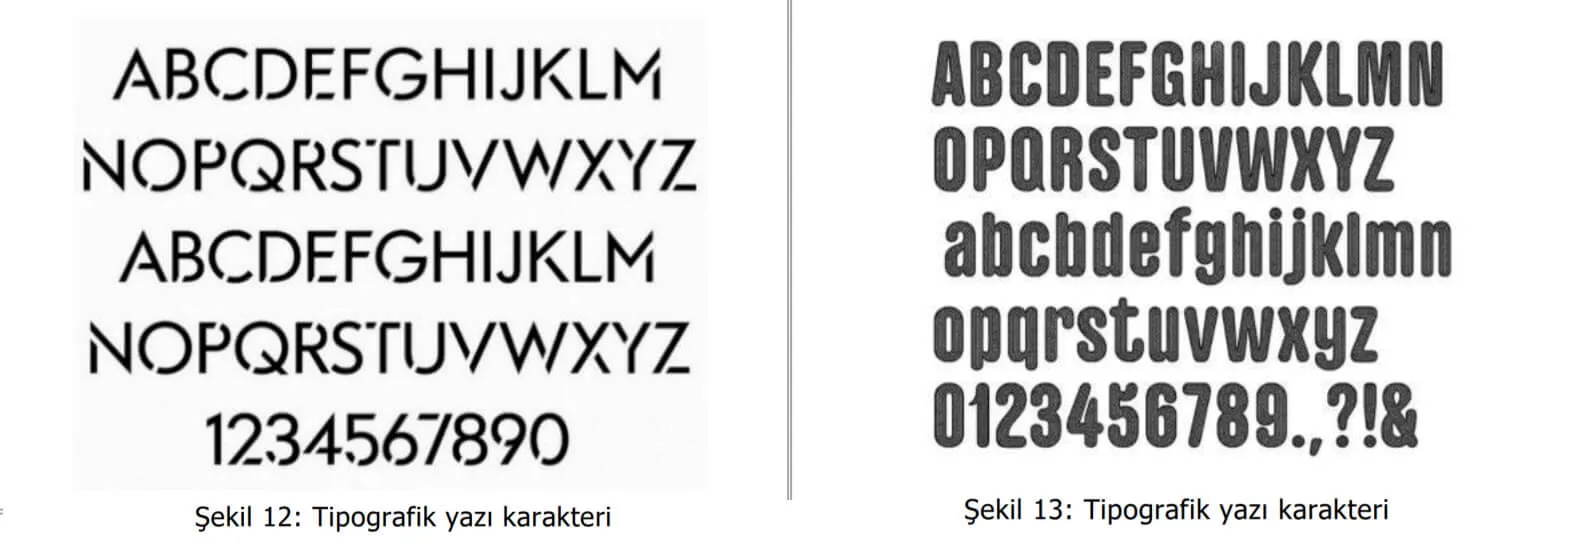 tipografik yazı karakter örnekleri-osmaniye web tasarım